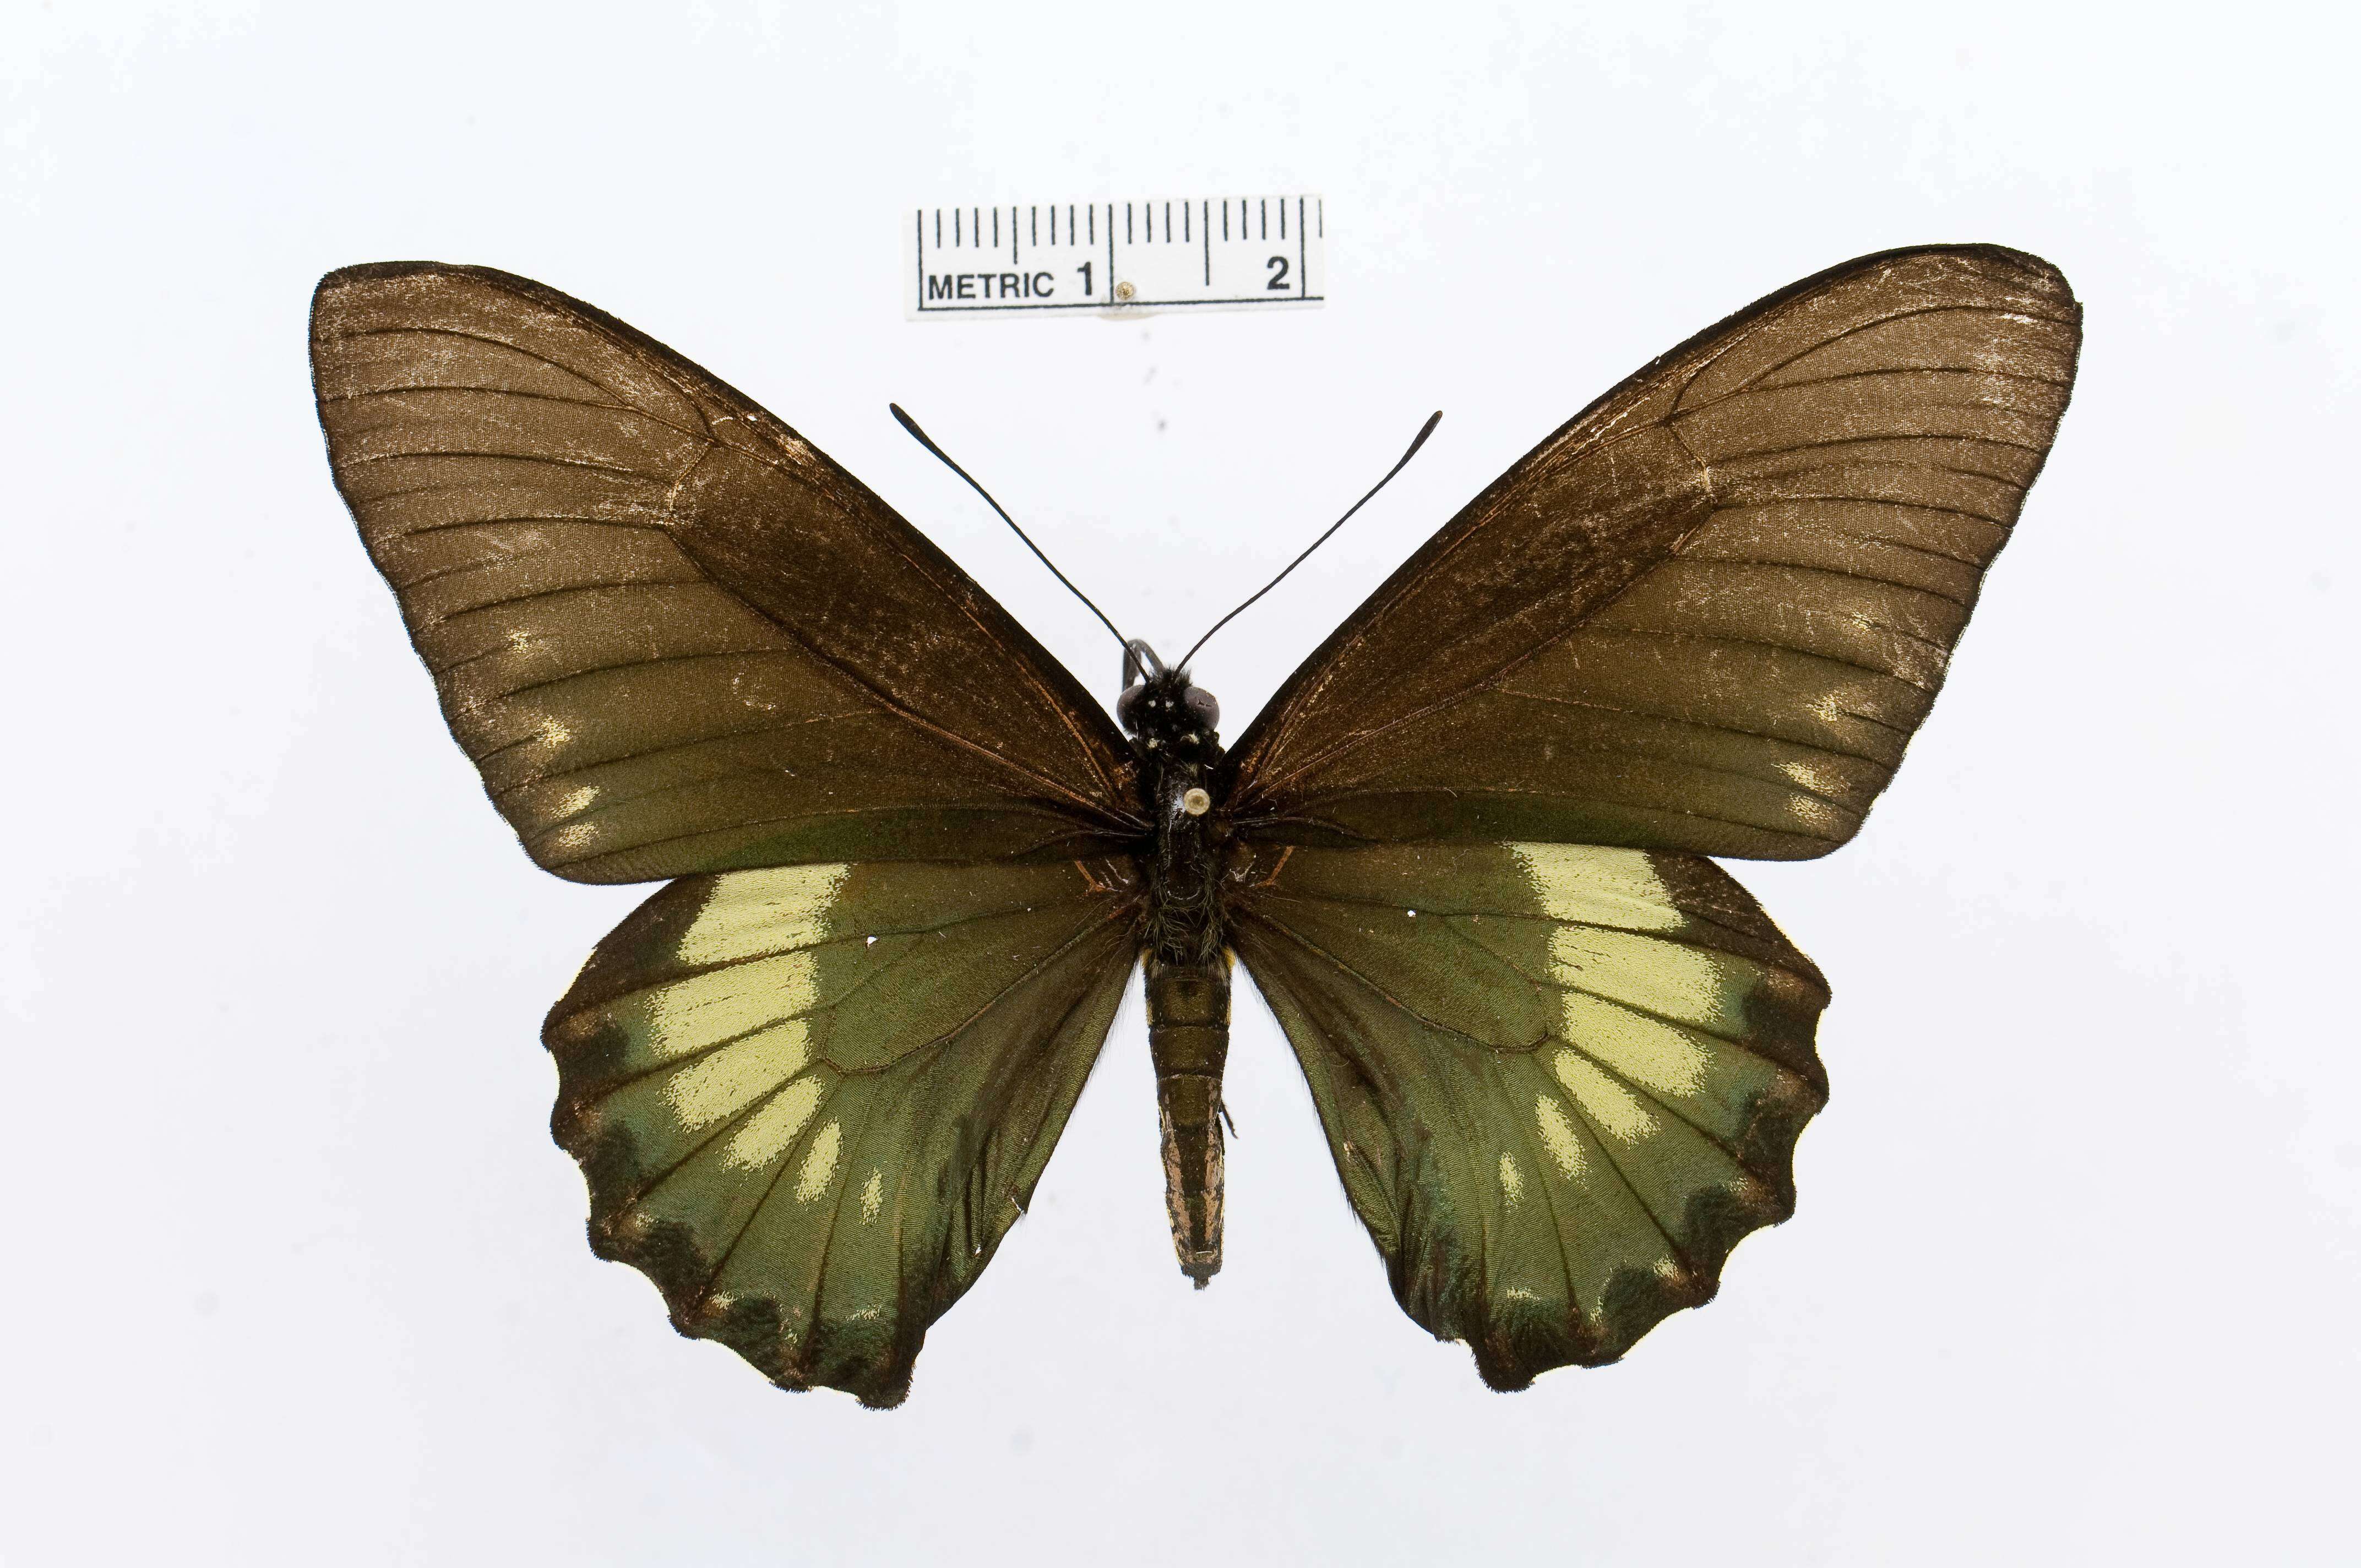 Image of Battus laodamas (Felder & Felder 1859)